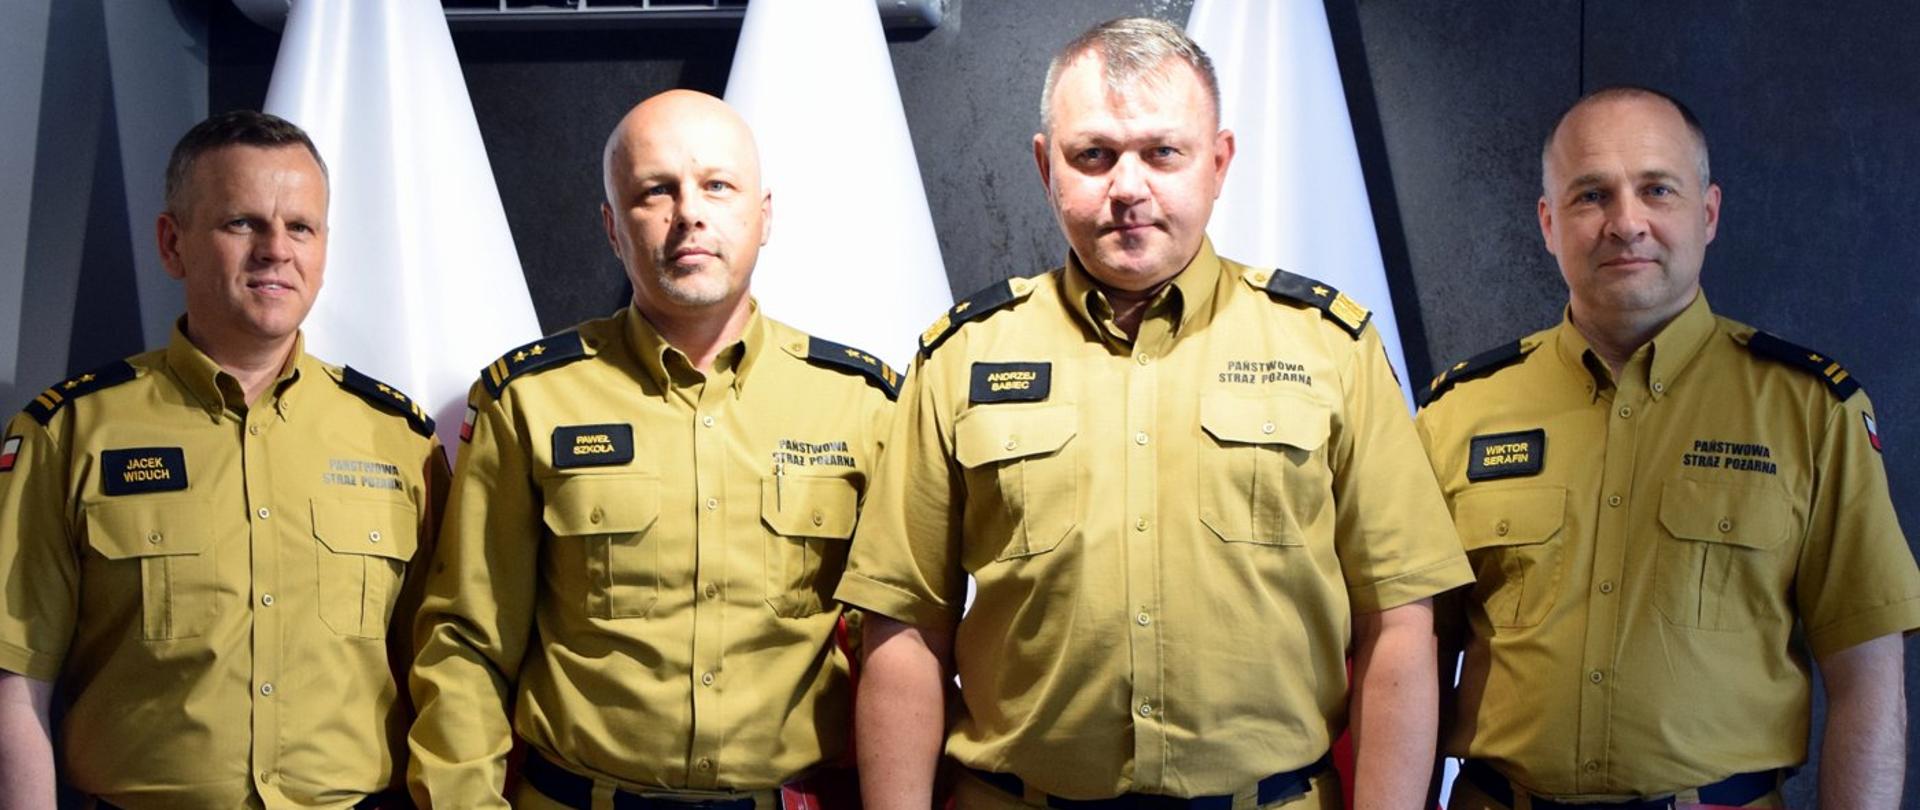 Zdjęcie zrobione wewnątrz pomieszczenia. Na zdjęciu czterech oficerów Państwowej Straży Pożarnej. Za nimi ustawione są biało-czerwone flagi.